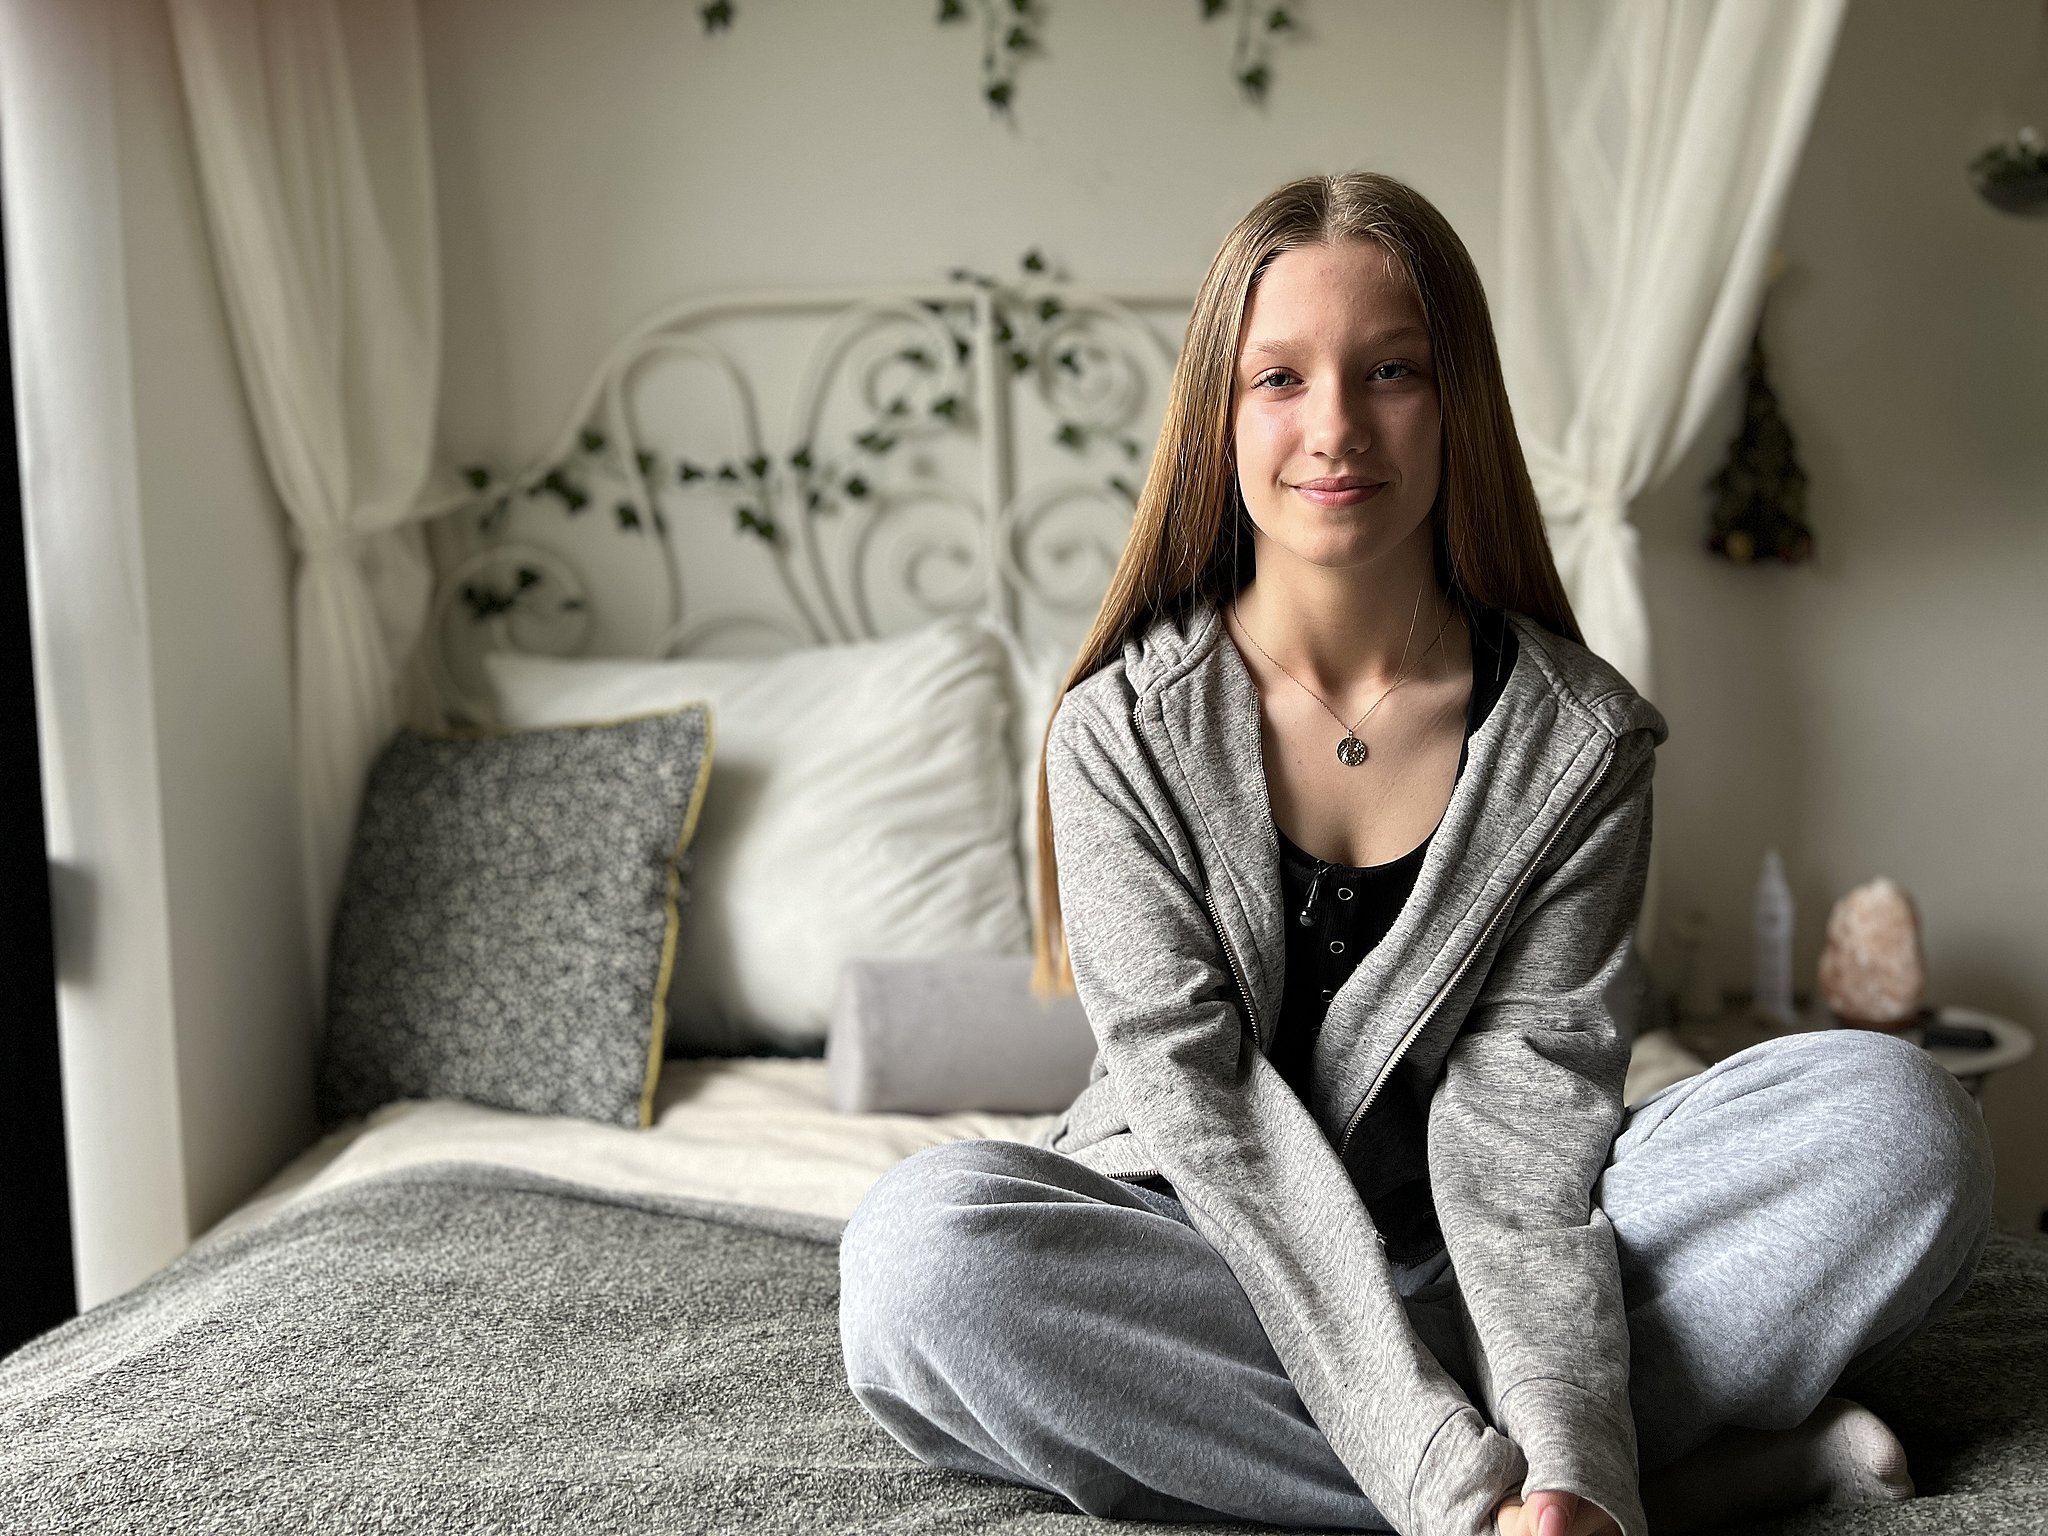 14-årige Emilia møder dødtræt skole men får uventet hjælp | TV2 Østjylland